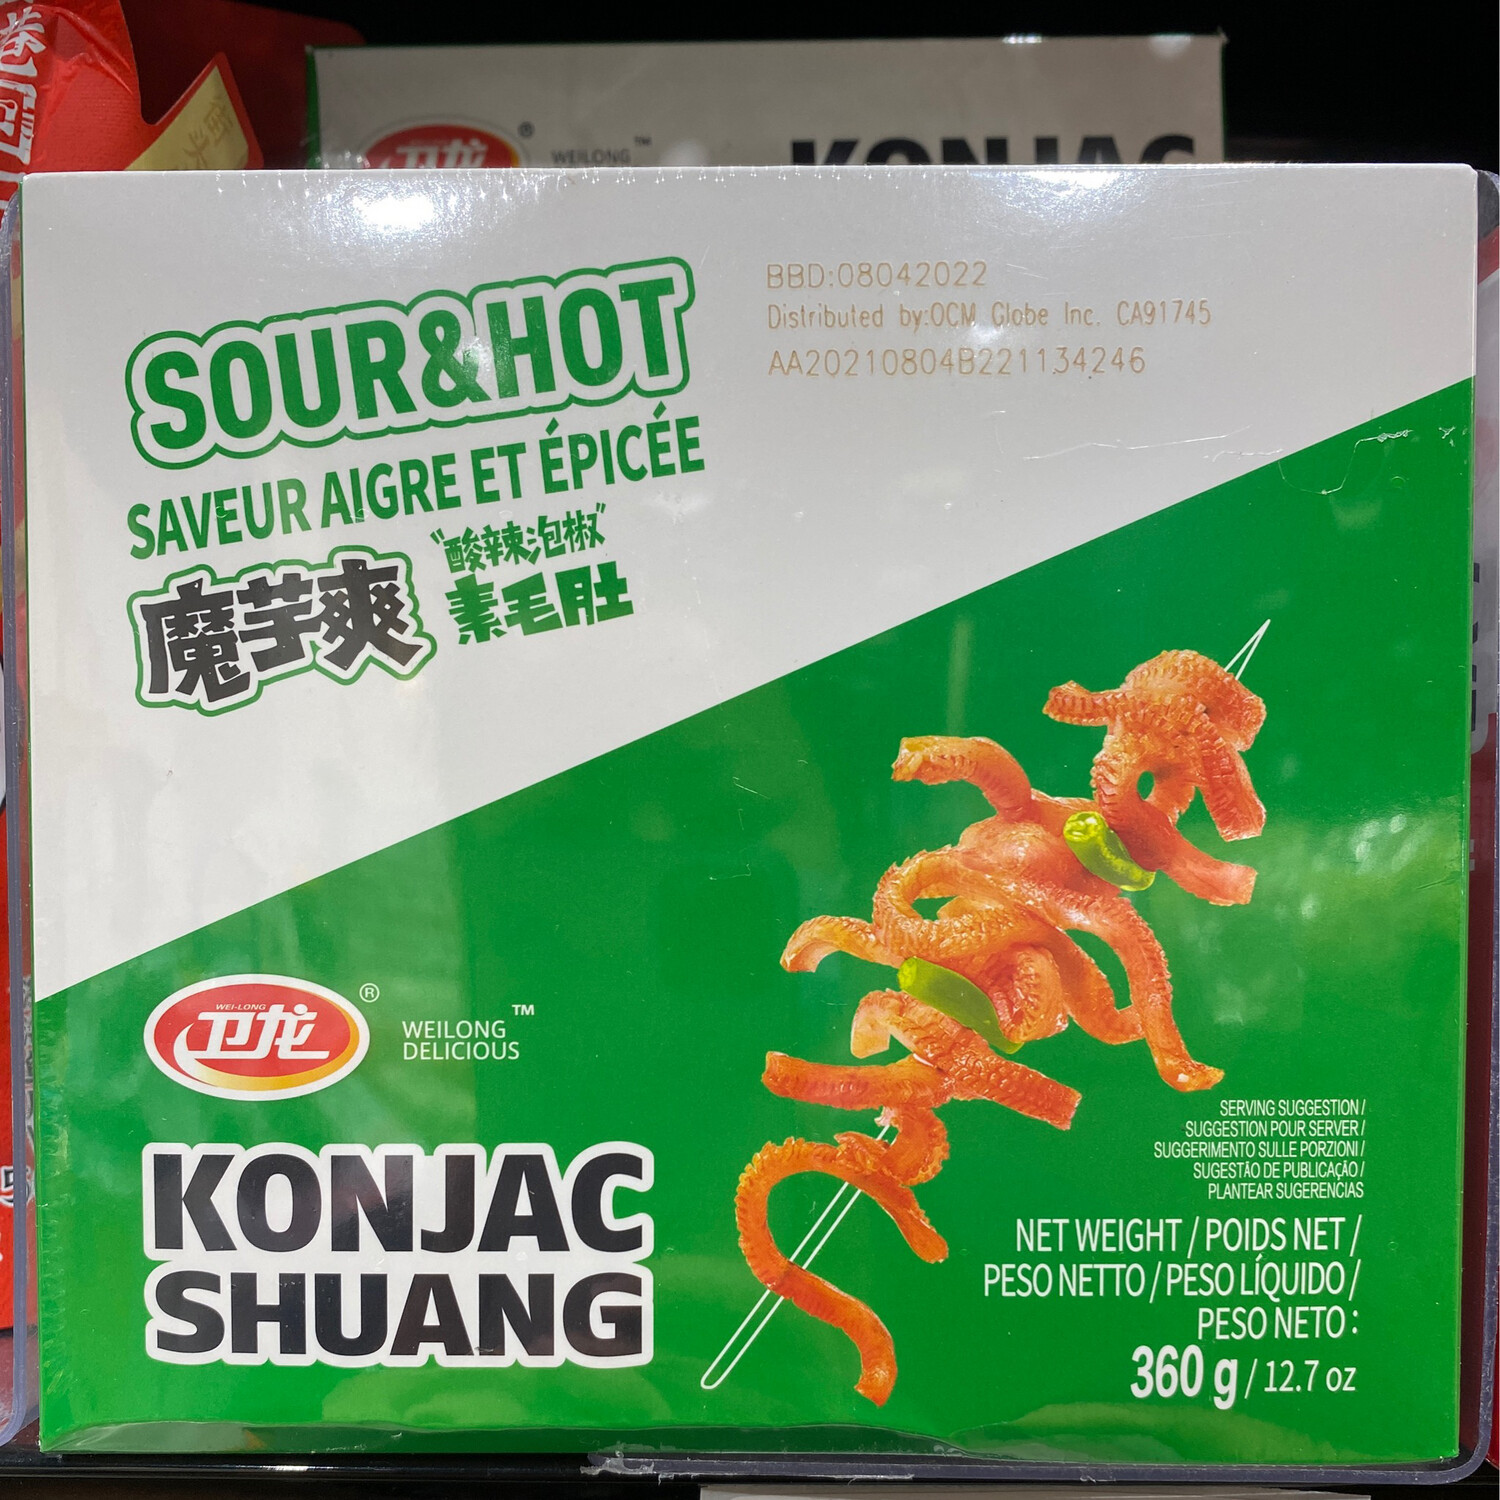 卫龙魔芋爽 酸辣 ~180g Konjac (spicy and sour flavor) 180g